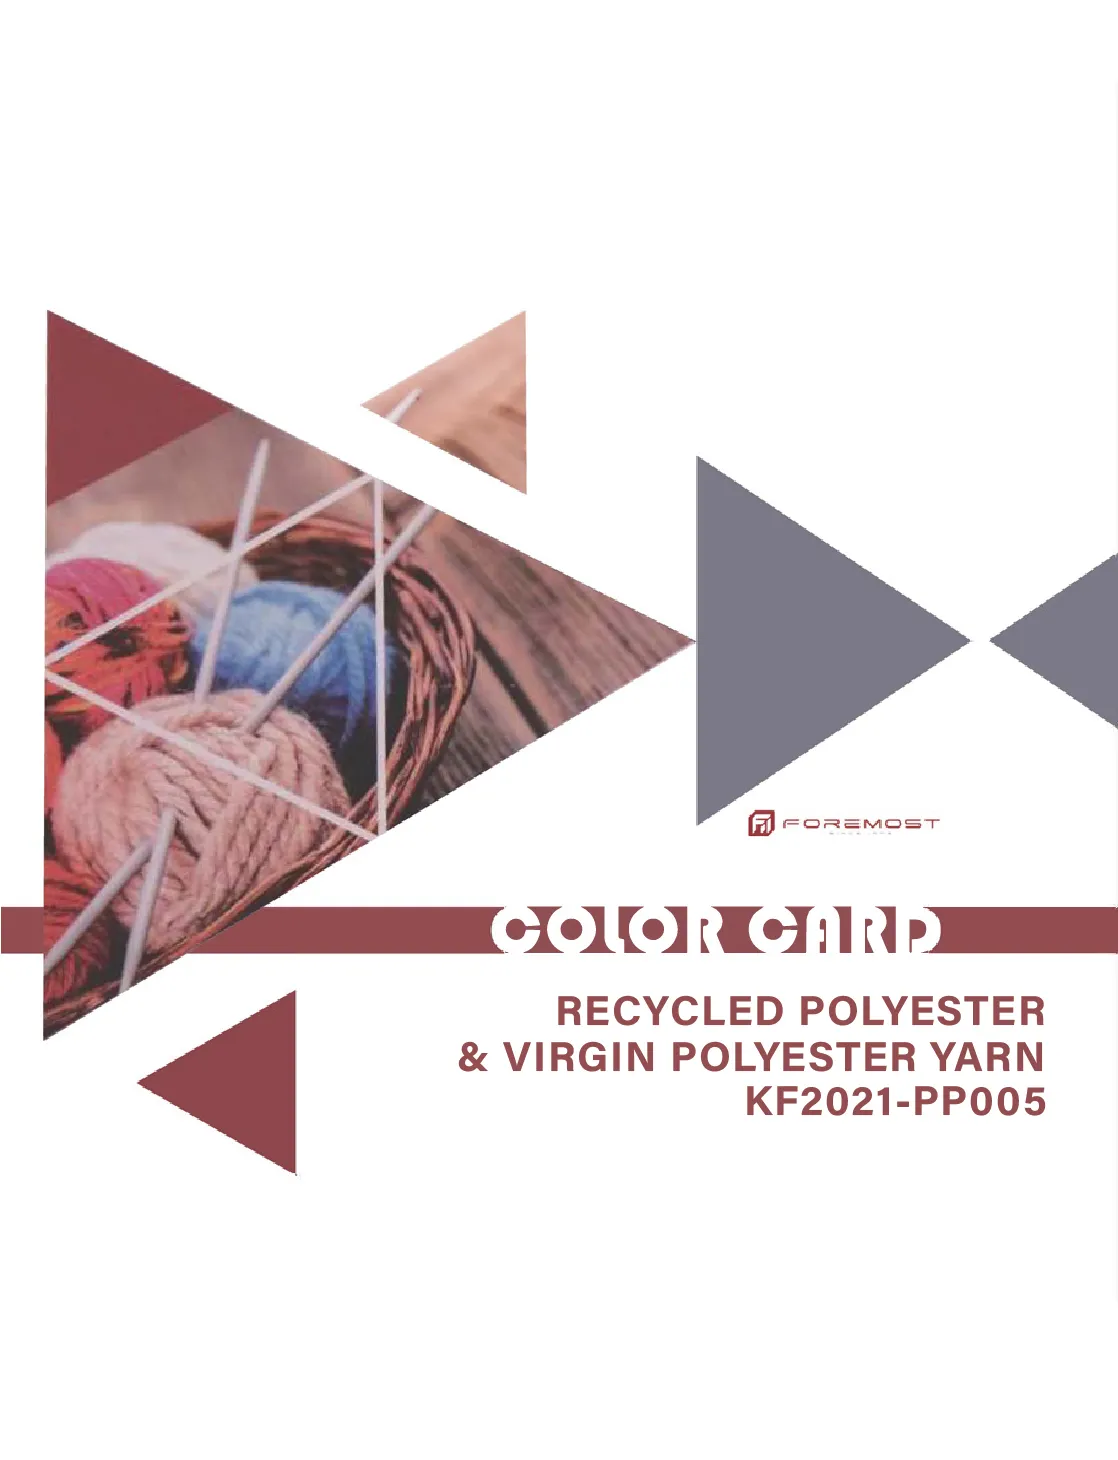 KF2021-PP005 de poliéster reciclado y poliéster virgen